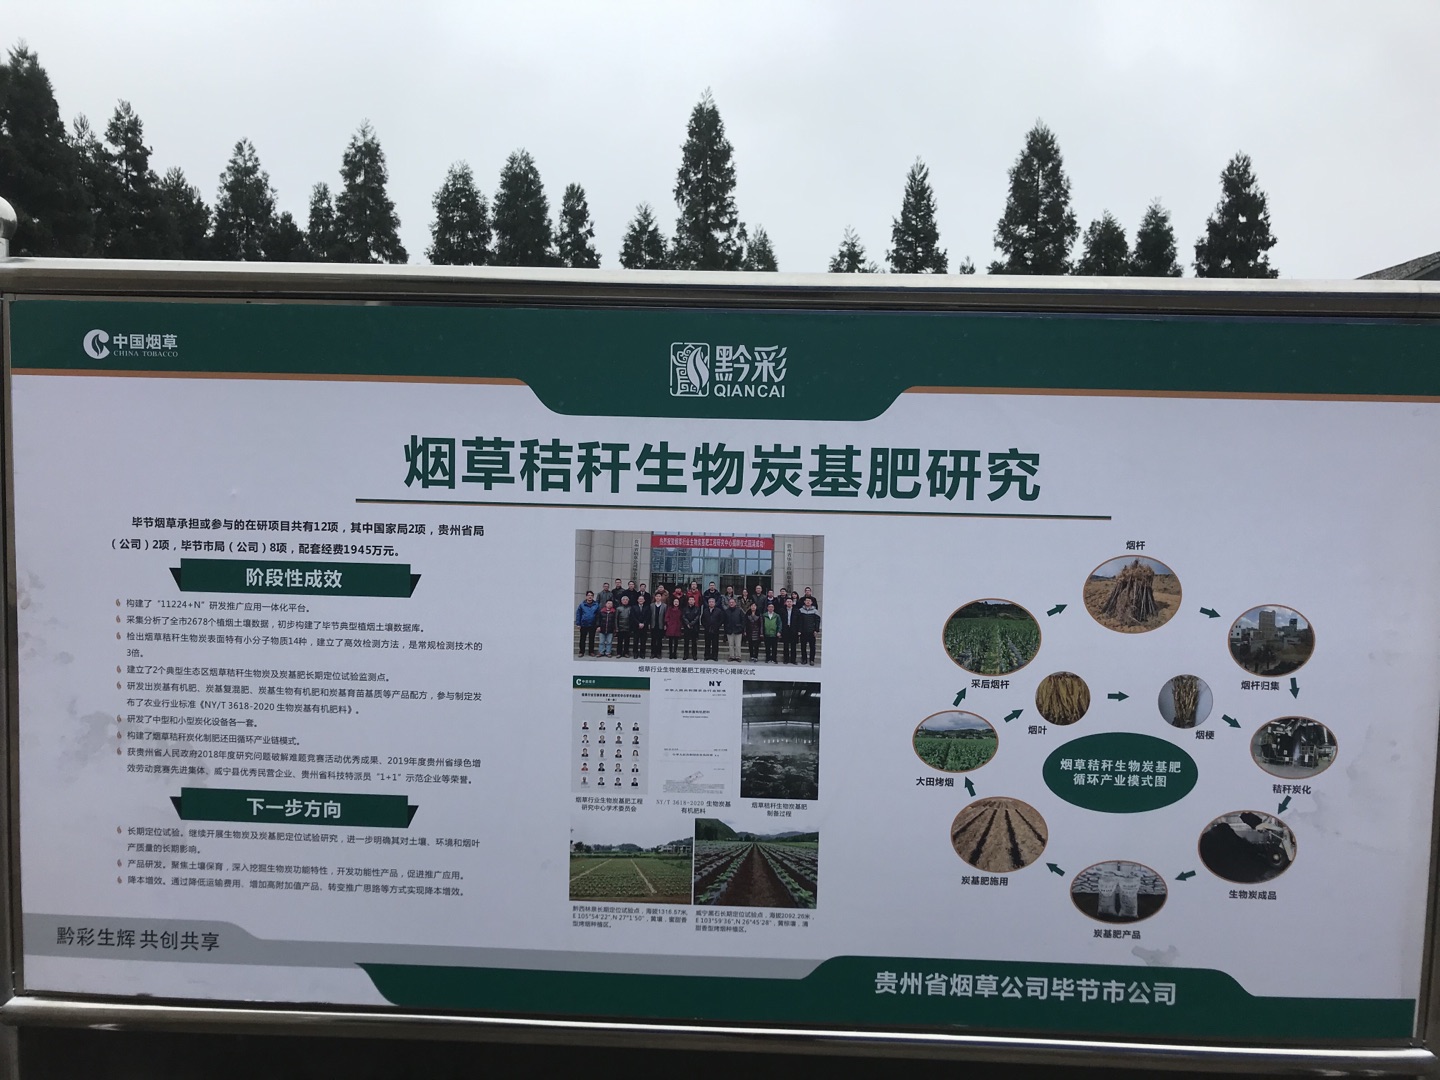 中国烟叶公司、国家局科技司领导一行人参观考察时科贵州炭基肥生产基地